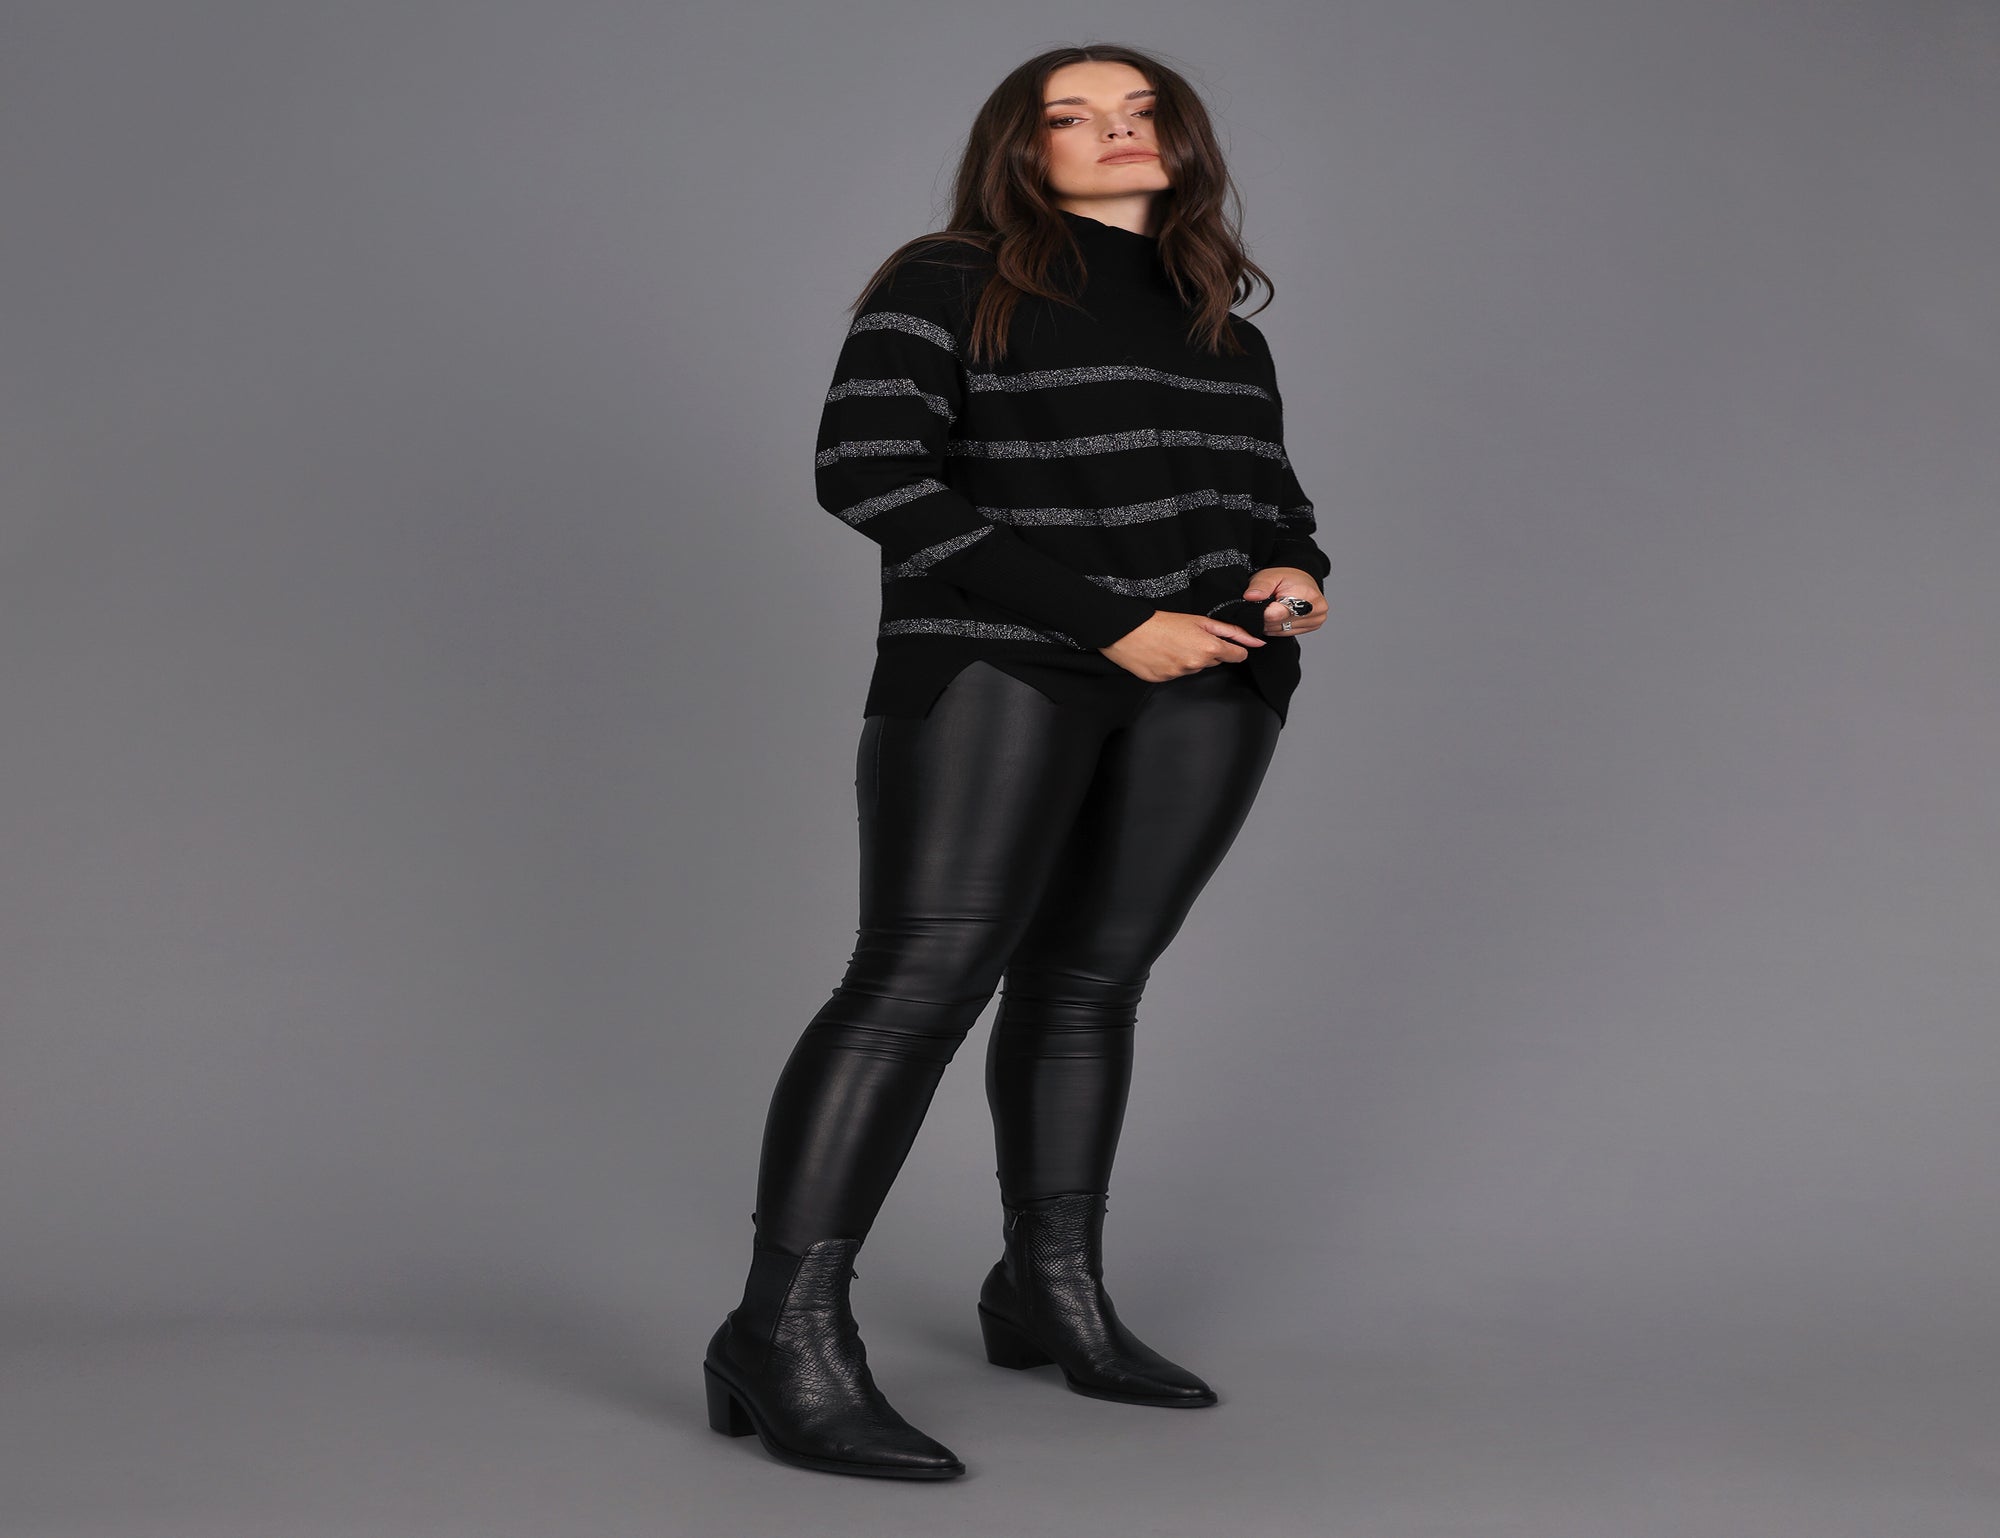 Lurex Stripe Sweater - Black - Knitwear - Long Sleeve - Women's Clothing -  Storm